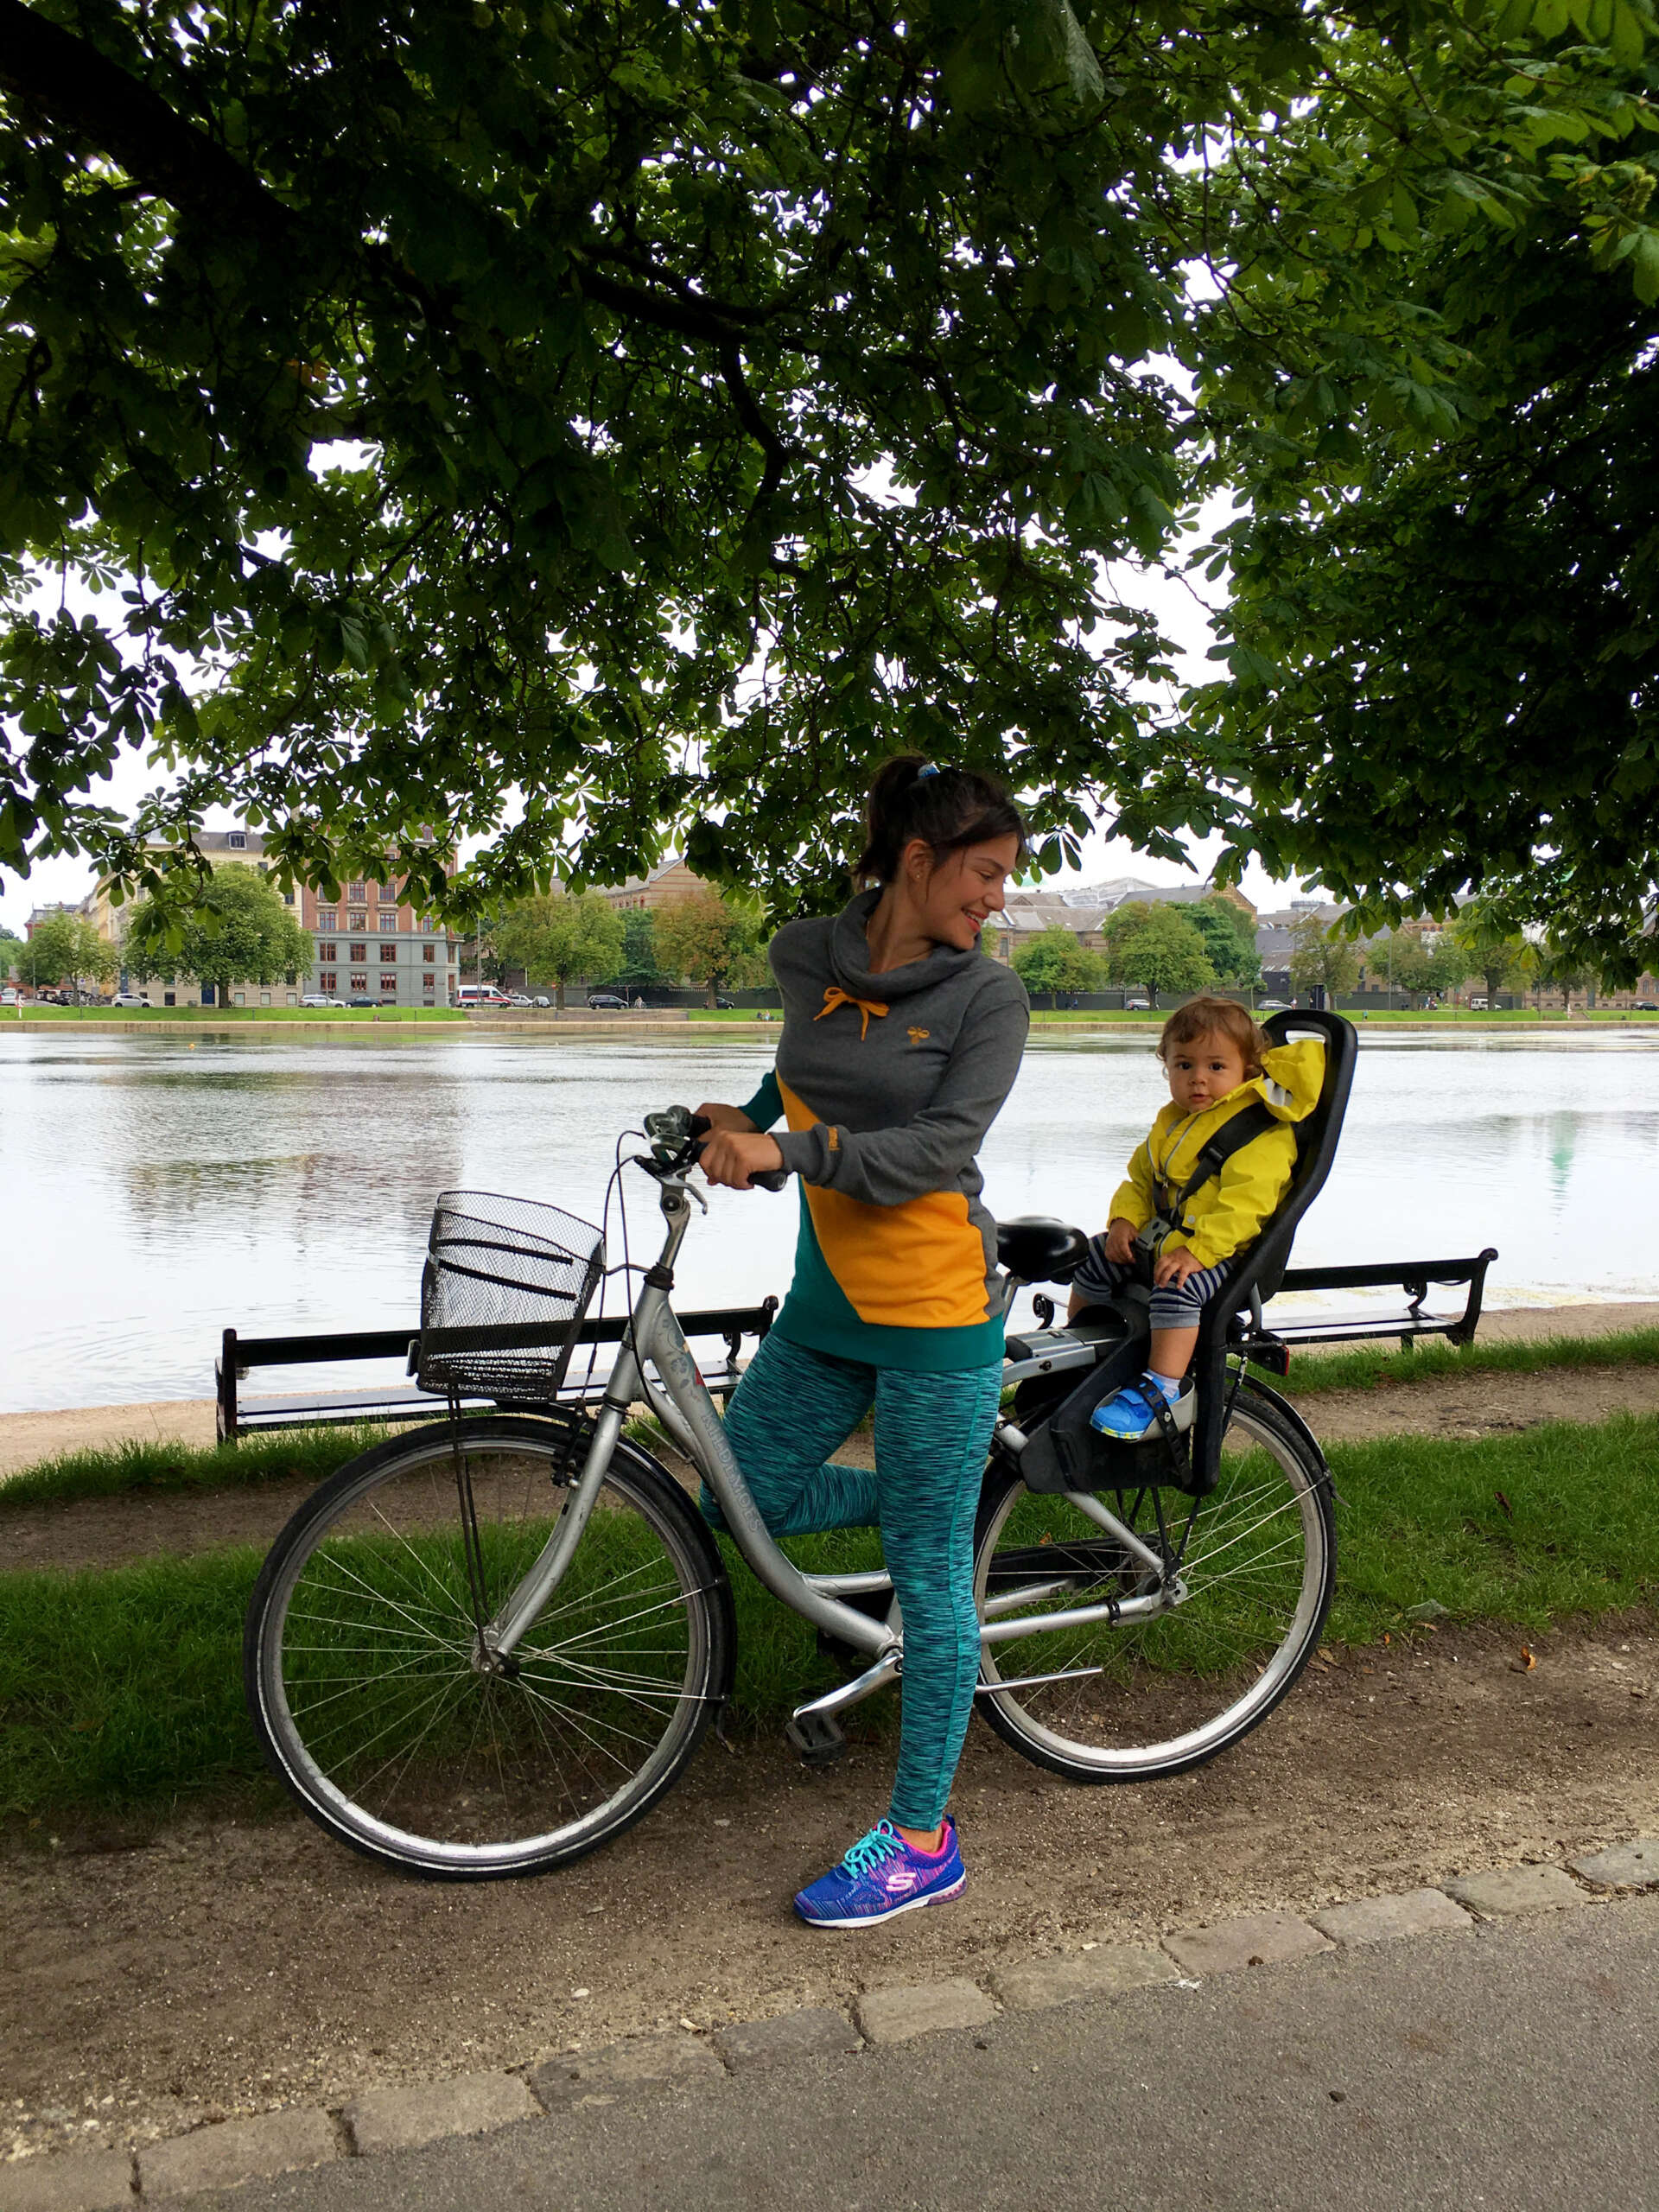 Kopenhag’ın dünyada en fazla bisiklet kullanılan, araç sayısından daha fazla bisiklet olan ve en bisiklet dostu şehri olduğunu biliyor muydunuz?